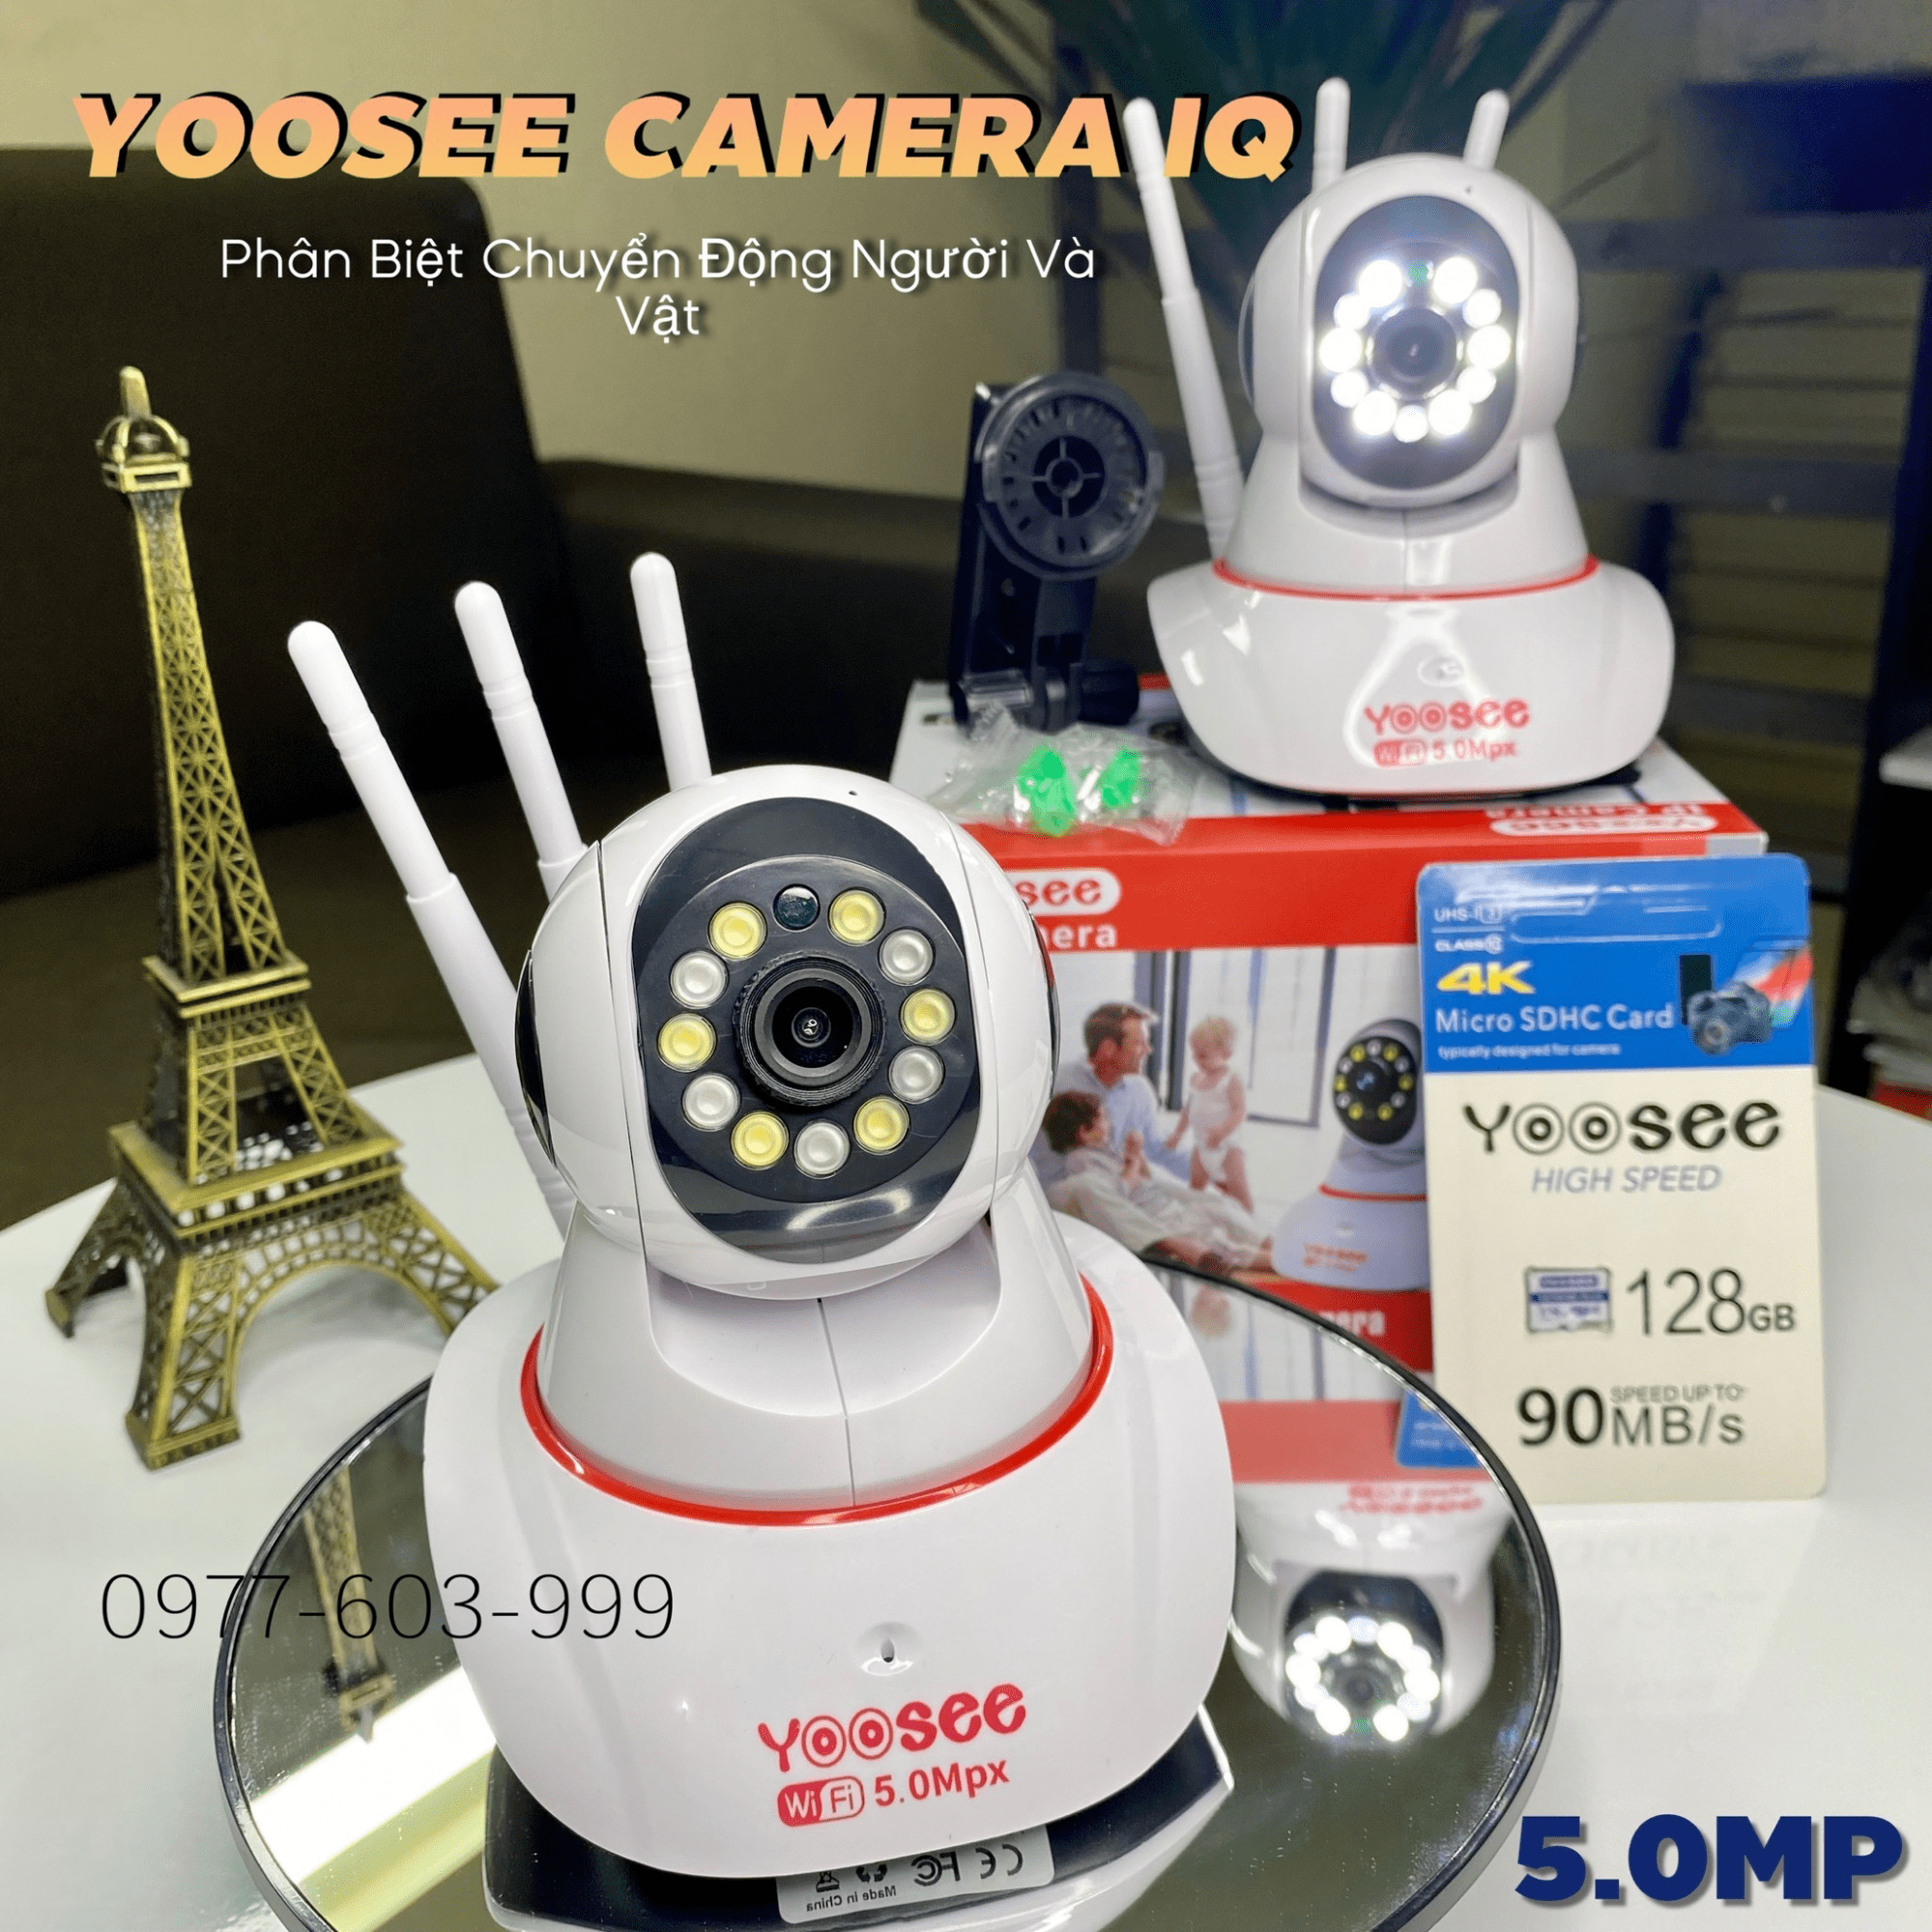 Cửa hàng Camera công nghệ - Yoosee